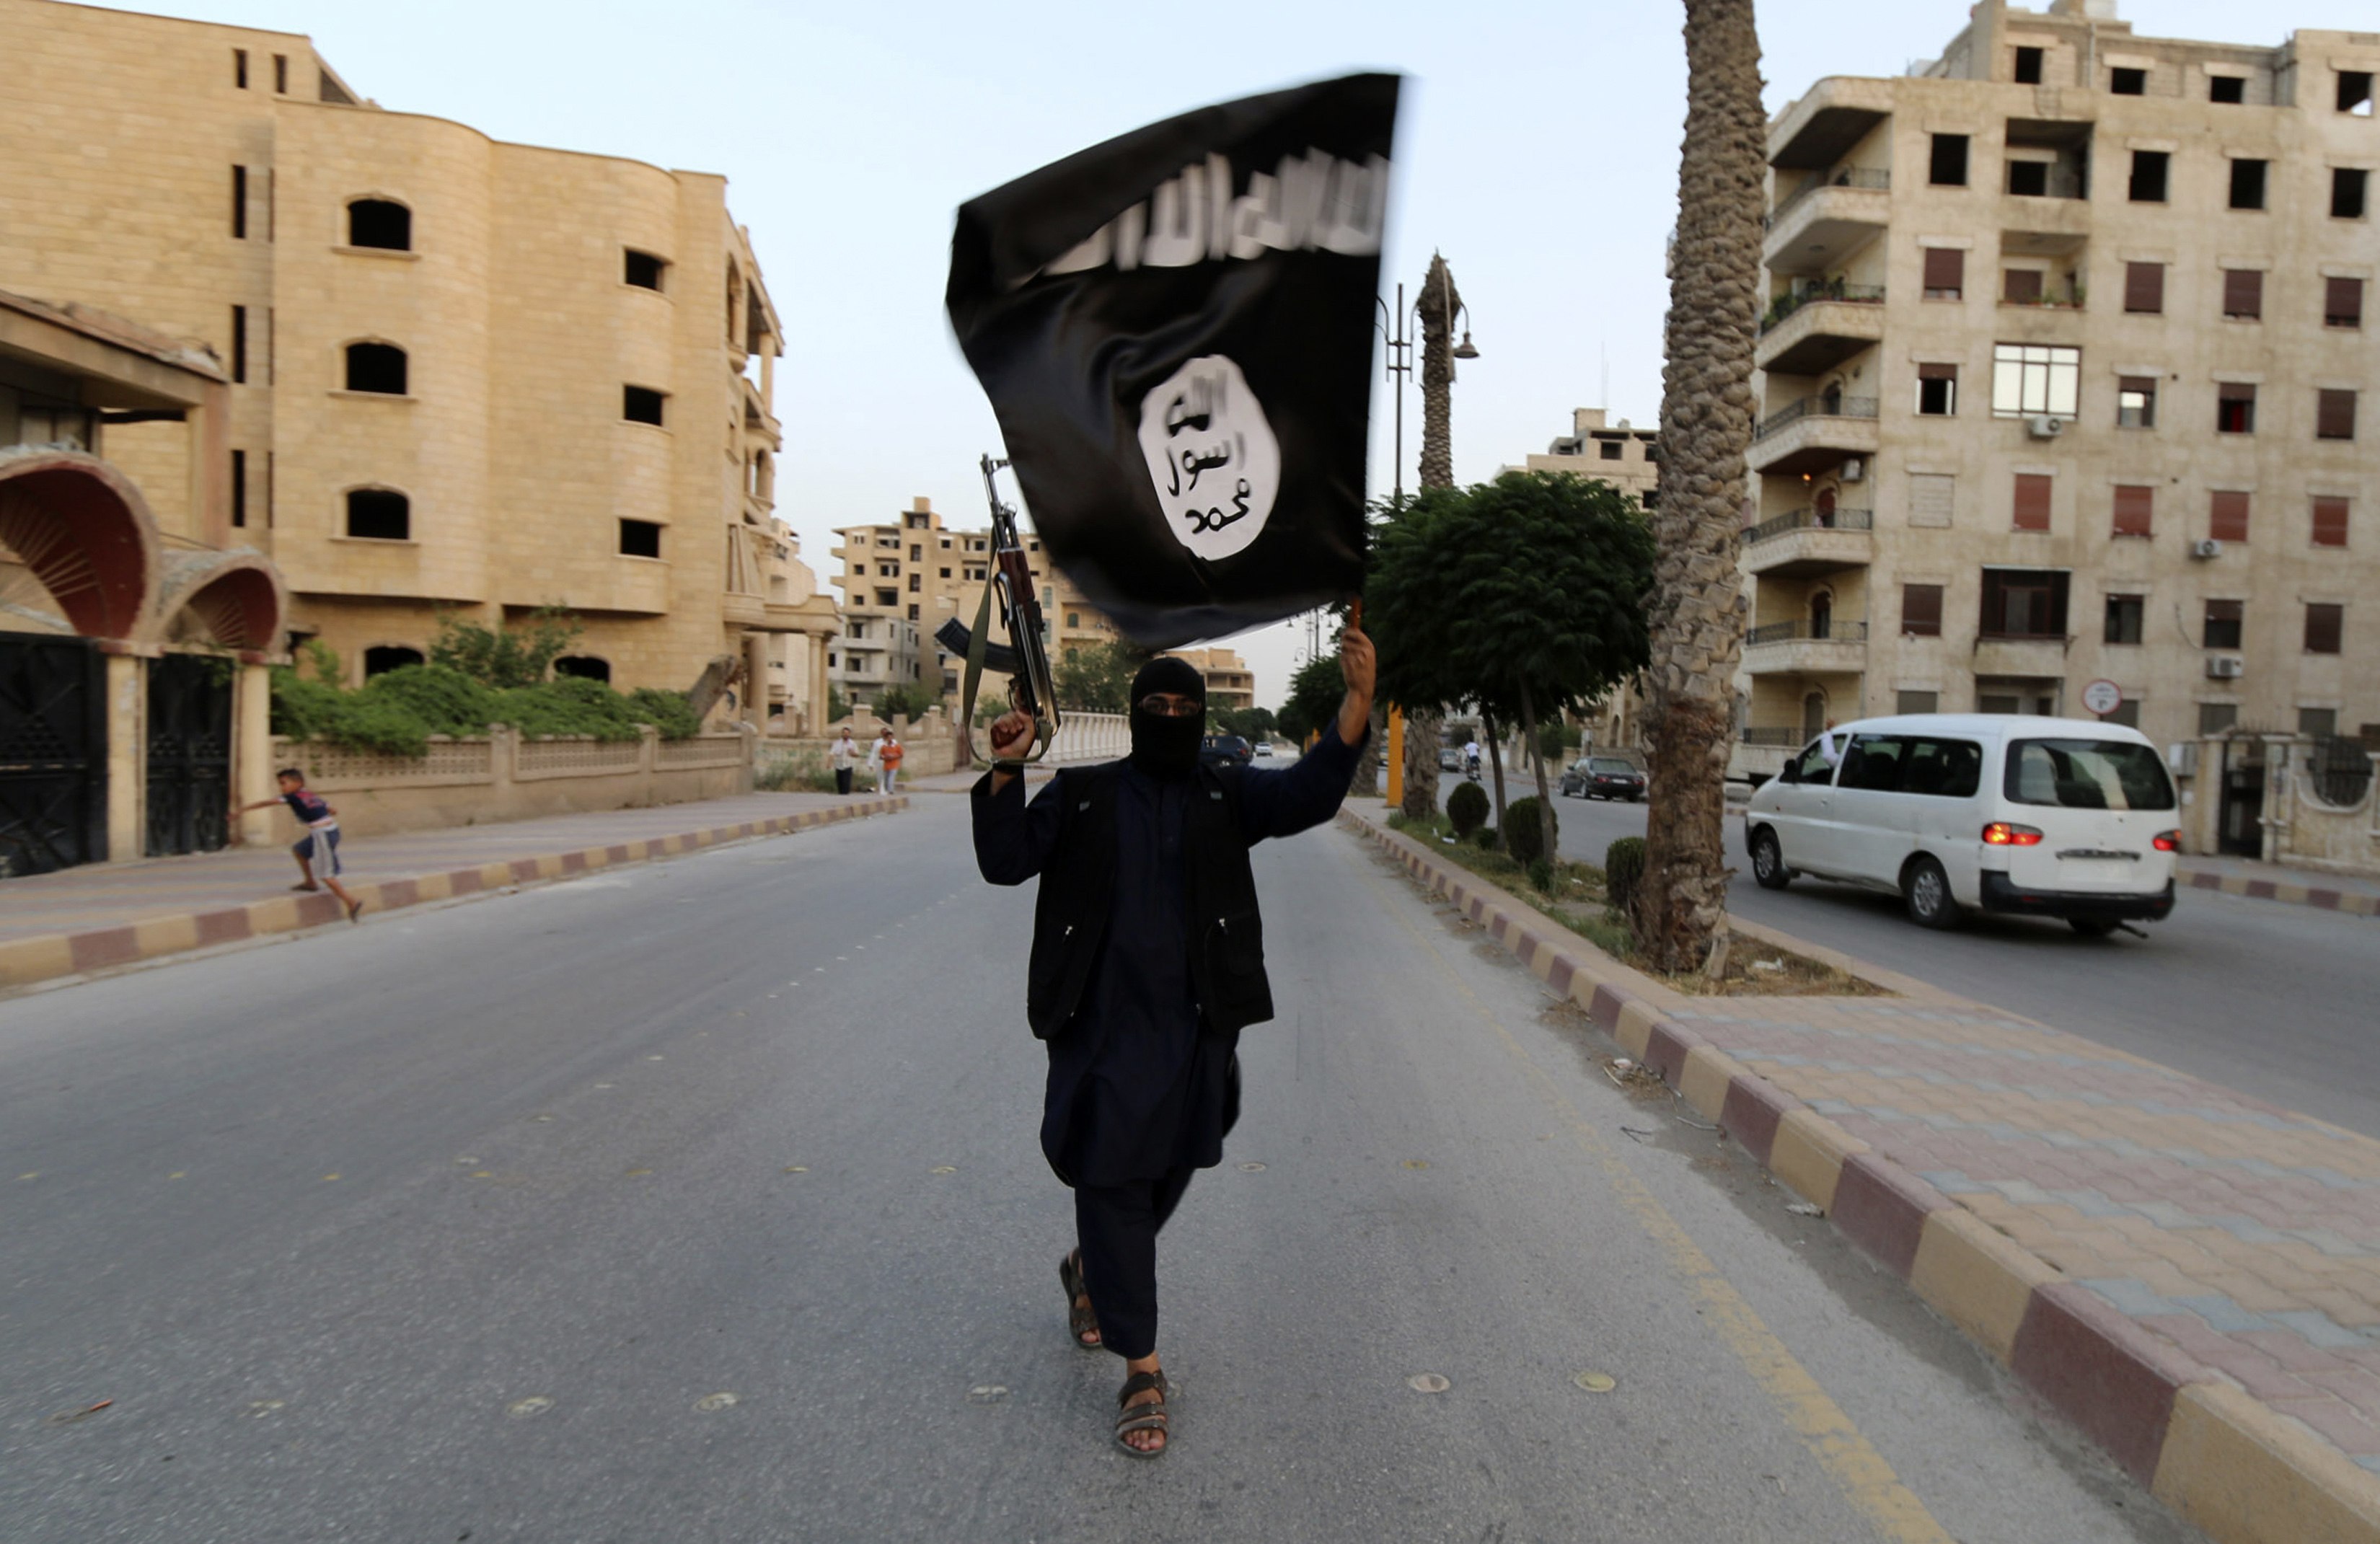 Πέντε χρόνια μετά τον Μπιν Λάντεν, η CIA θέλει την εξόντωση του ηγέτη του ISIS